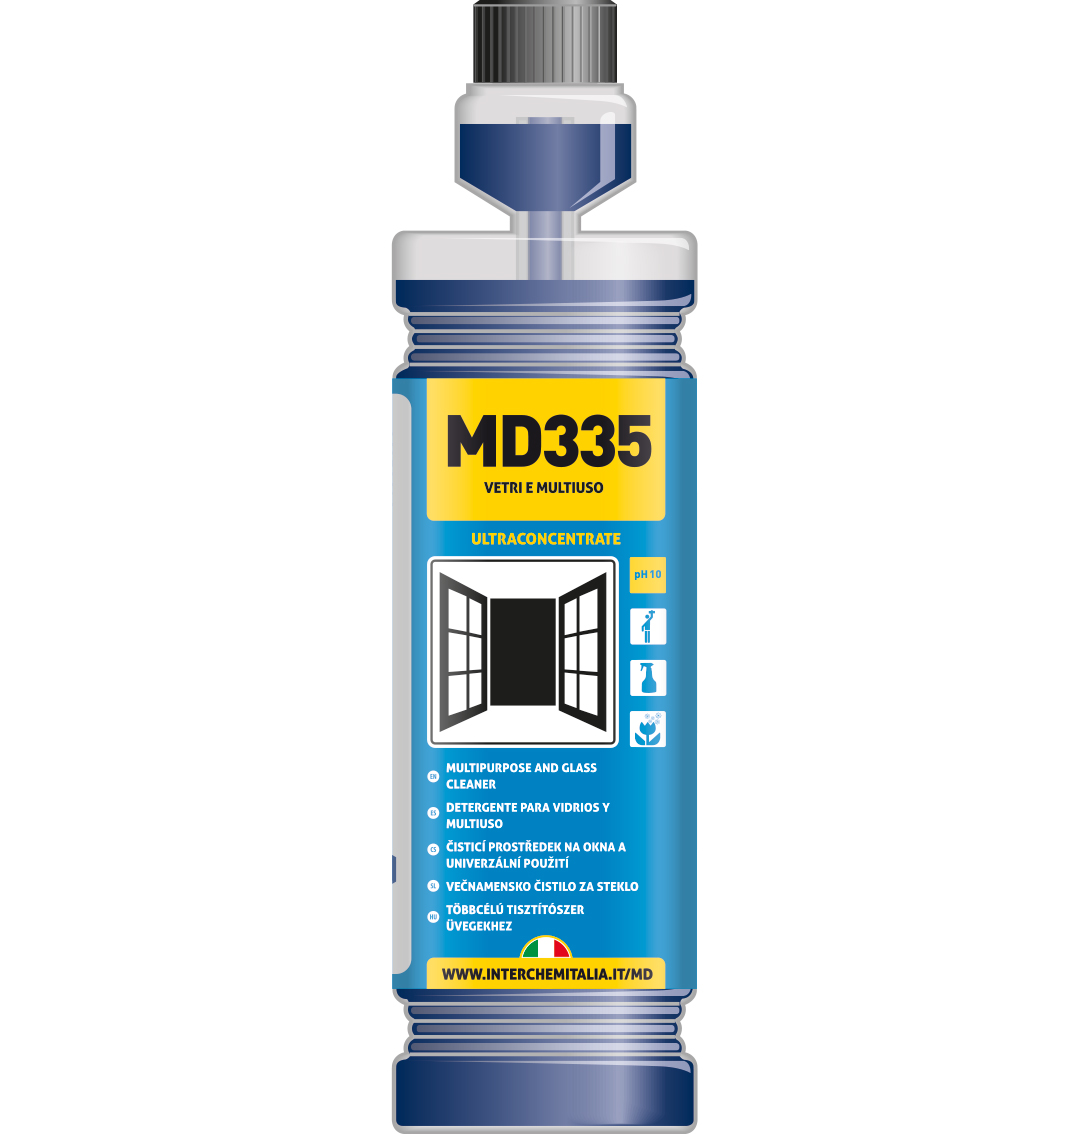 Detergente vetri e multiuso MD 335 1 litro